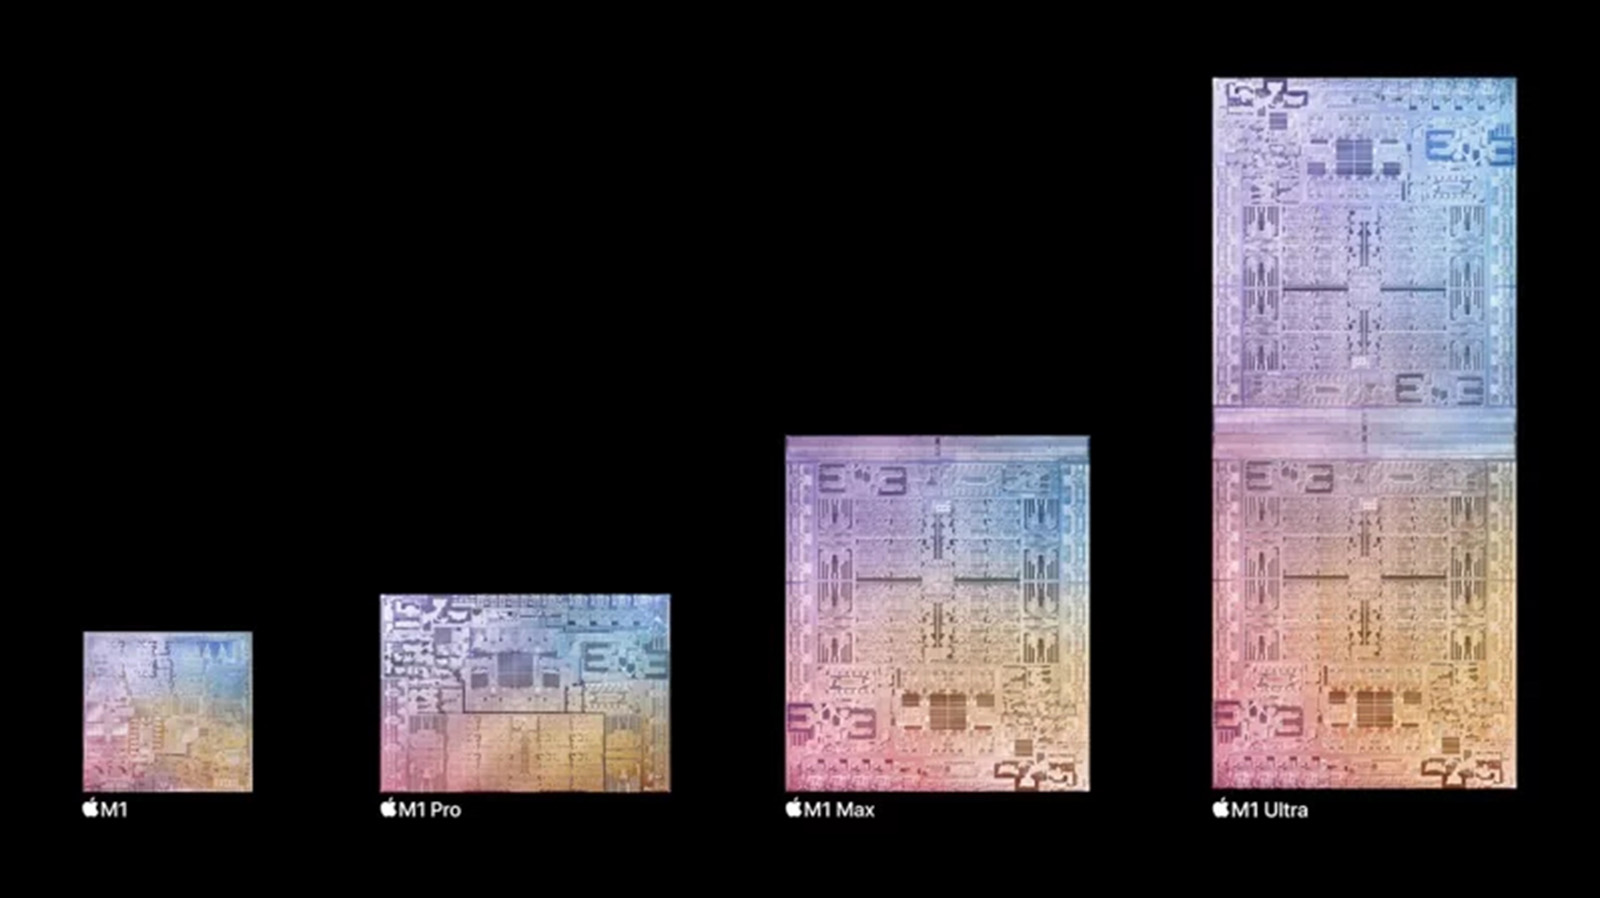 M1 Ultra-M1-晶片-Apple-新品-Mac-效能-蘋果